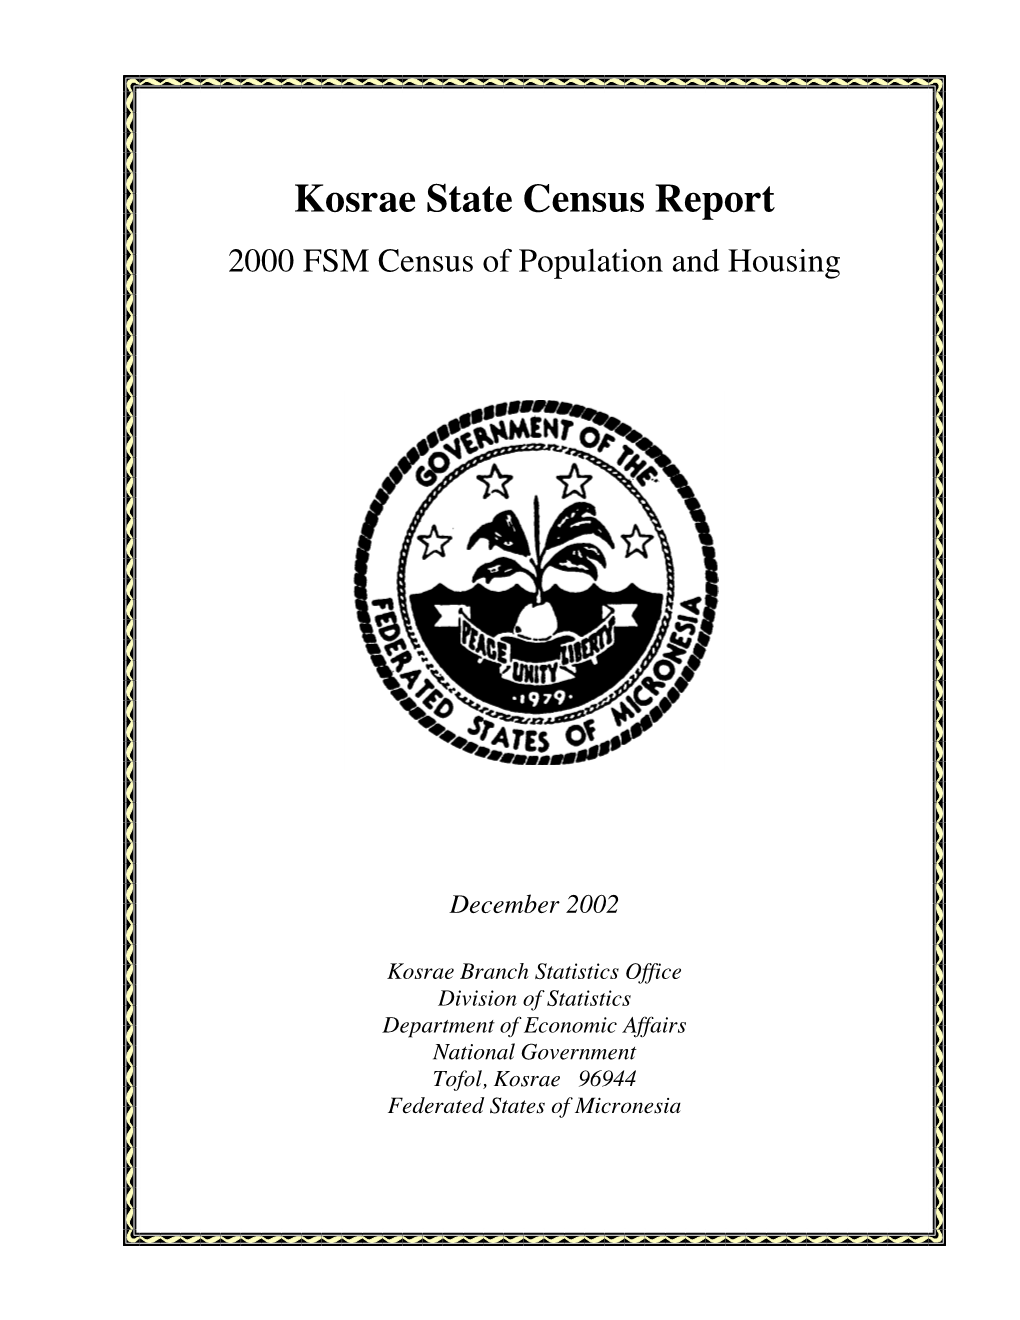 FSM 2000 Census Report Kosrae